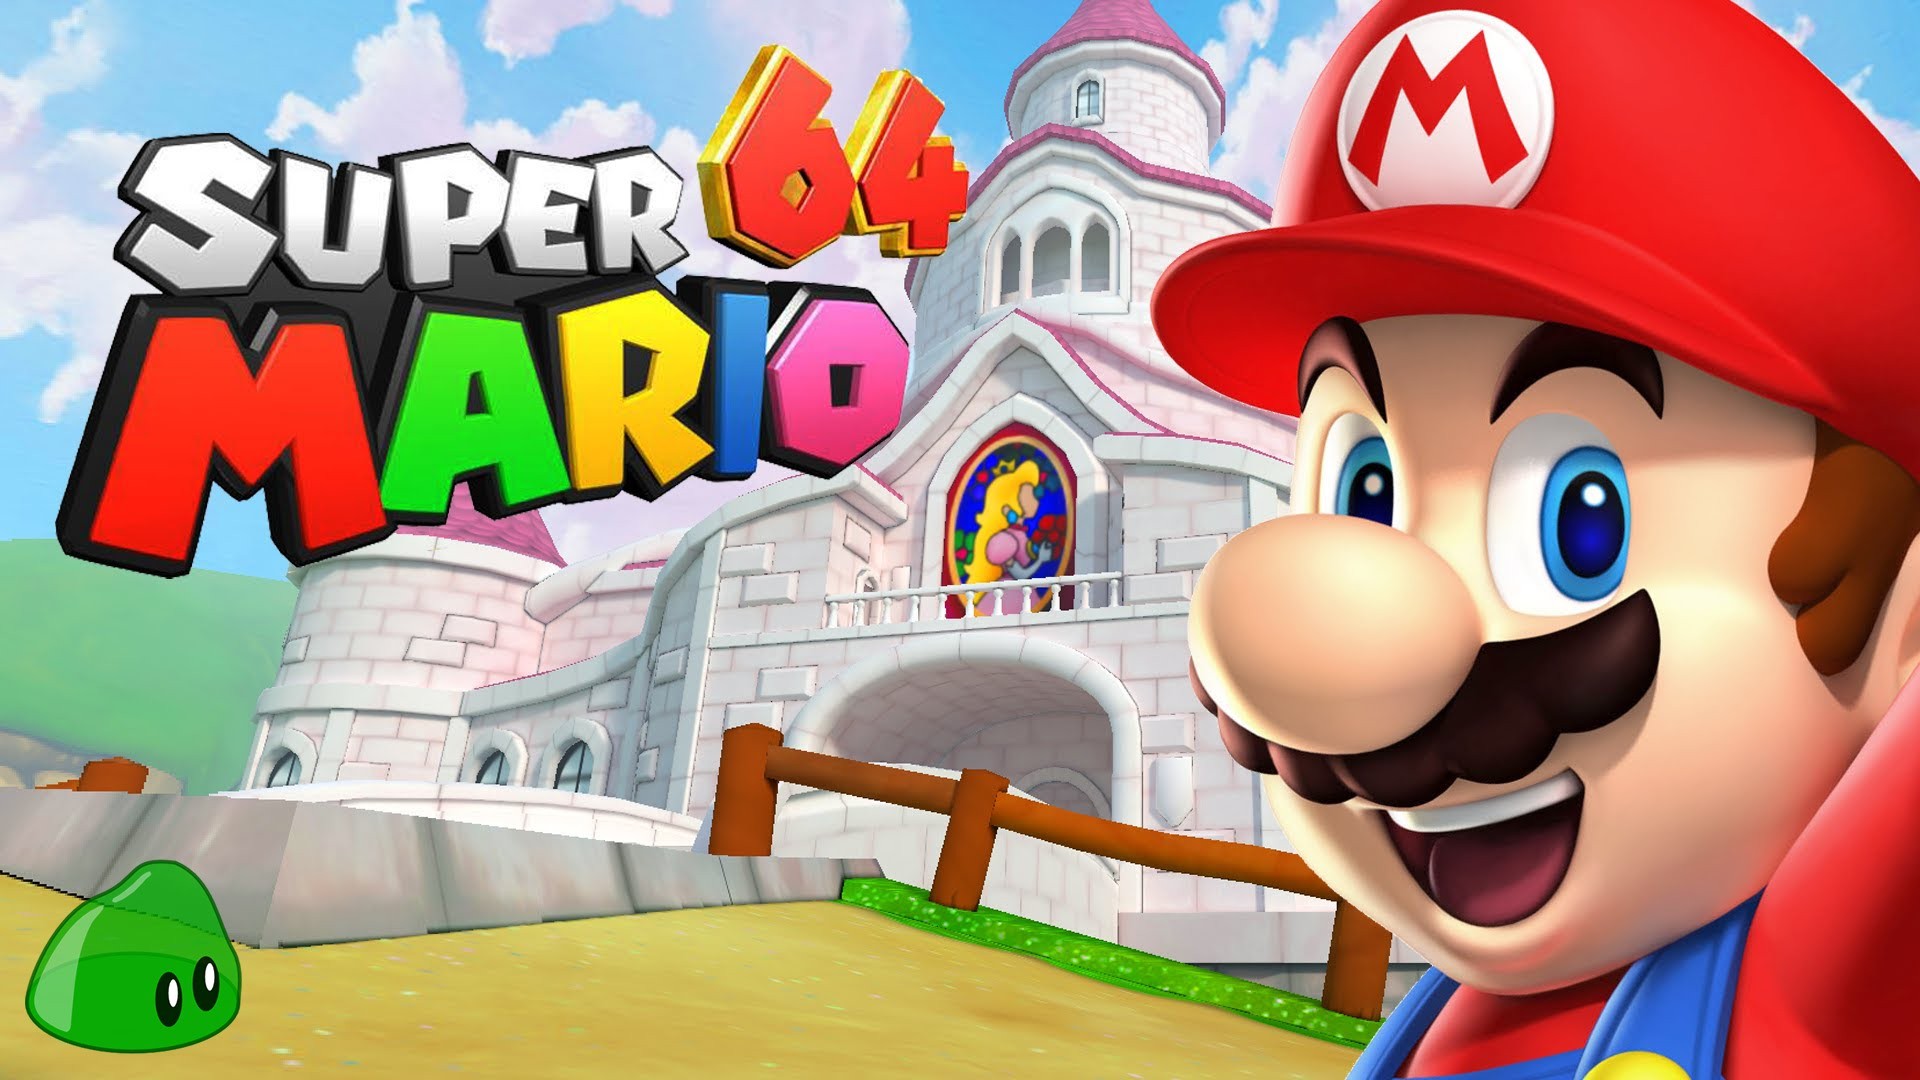 Jogo Super Mario 64 agora pode ser jogado no navegador da internet   Tecnologia: Pernambuco.com - O melhor conteúdo sobre Pernambuco na internet